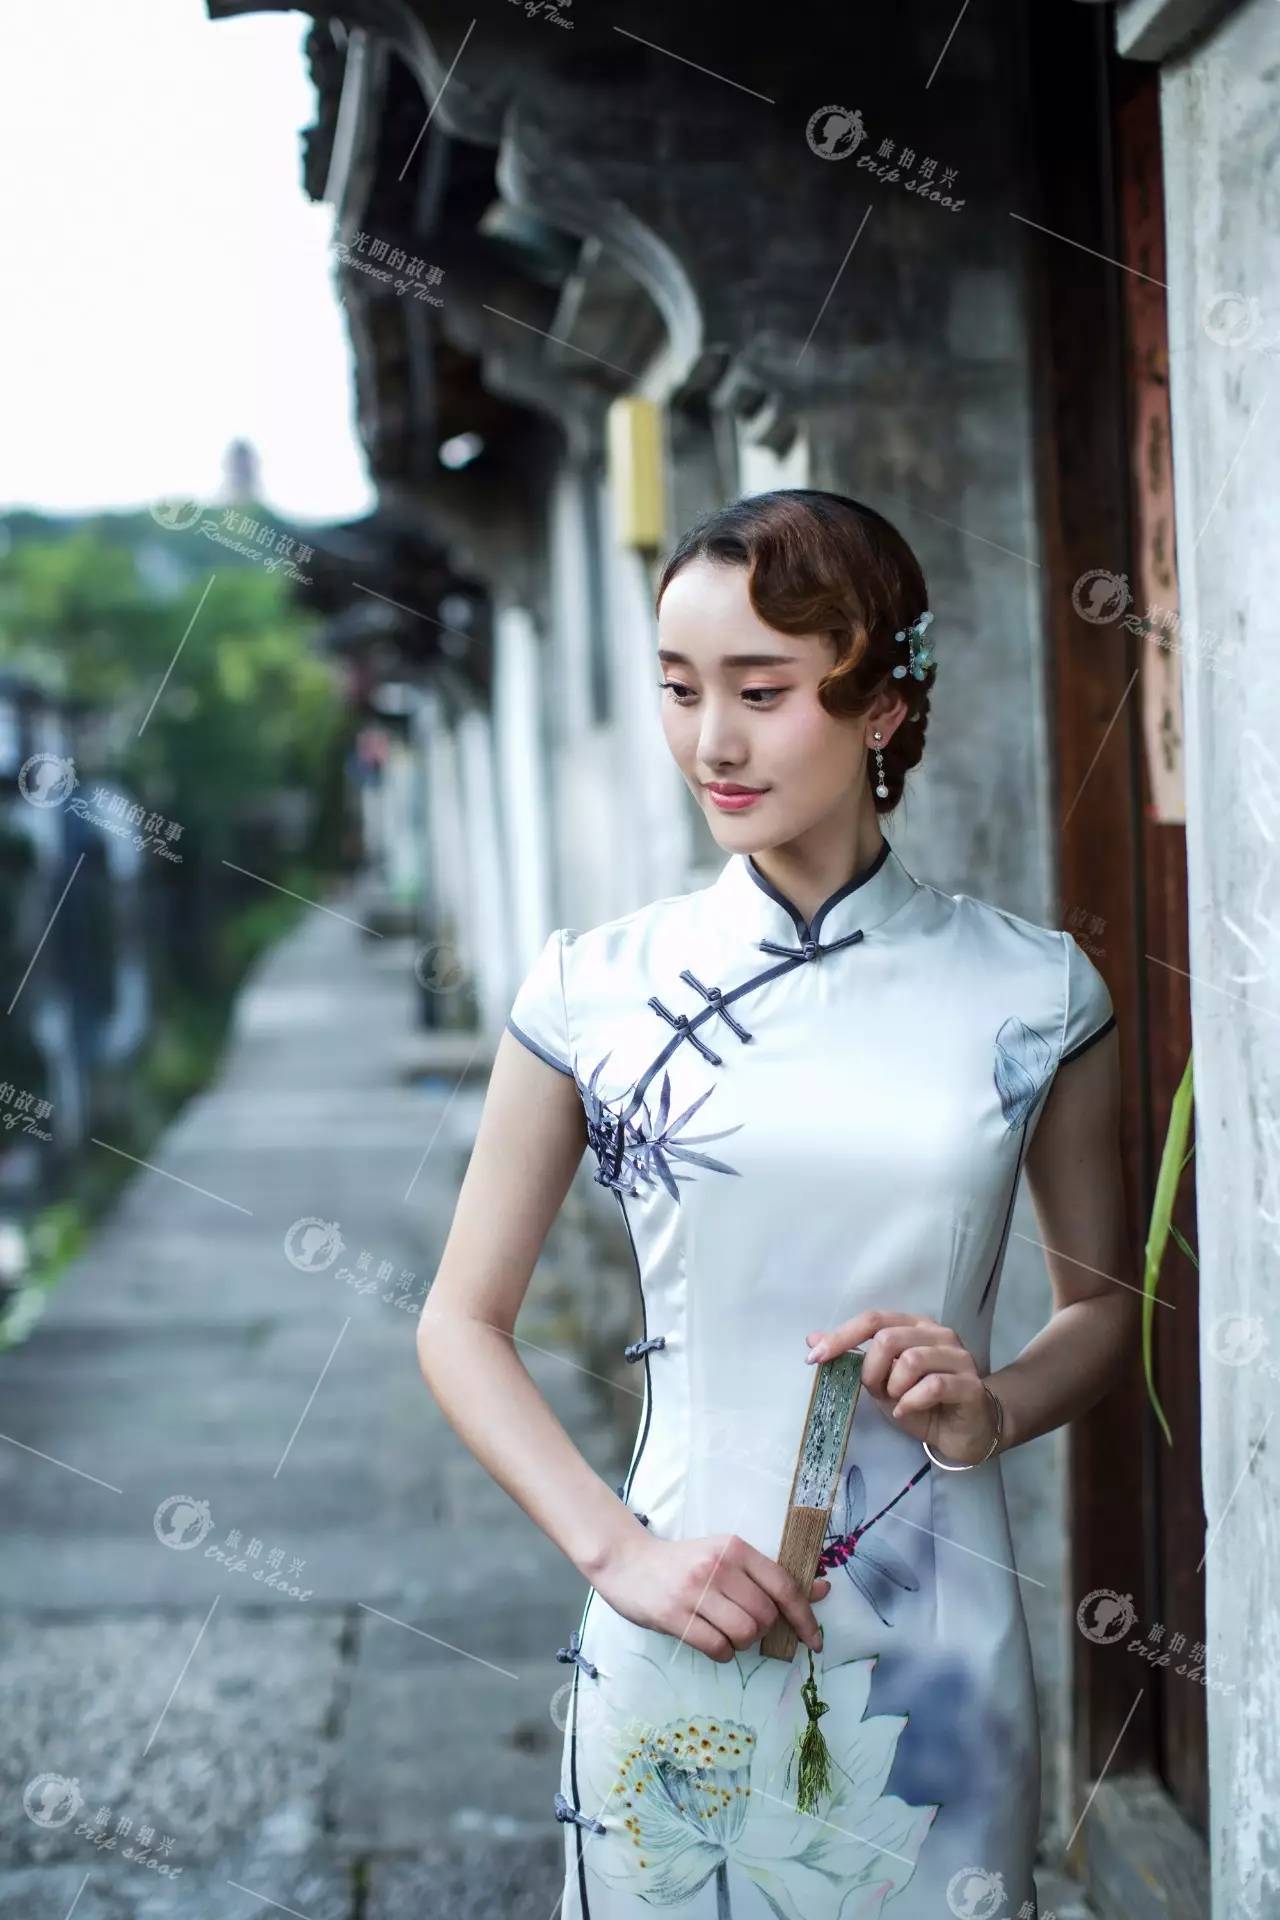 当一个女子,身着为简单的素色旗袍,走在绍兴的老石板街巷,那曼妙的